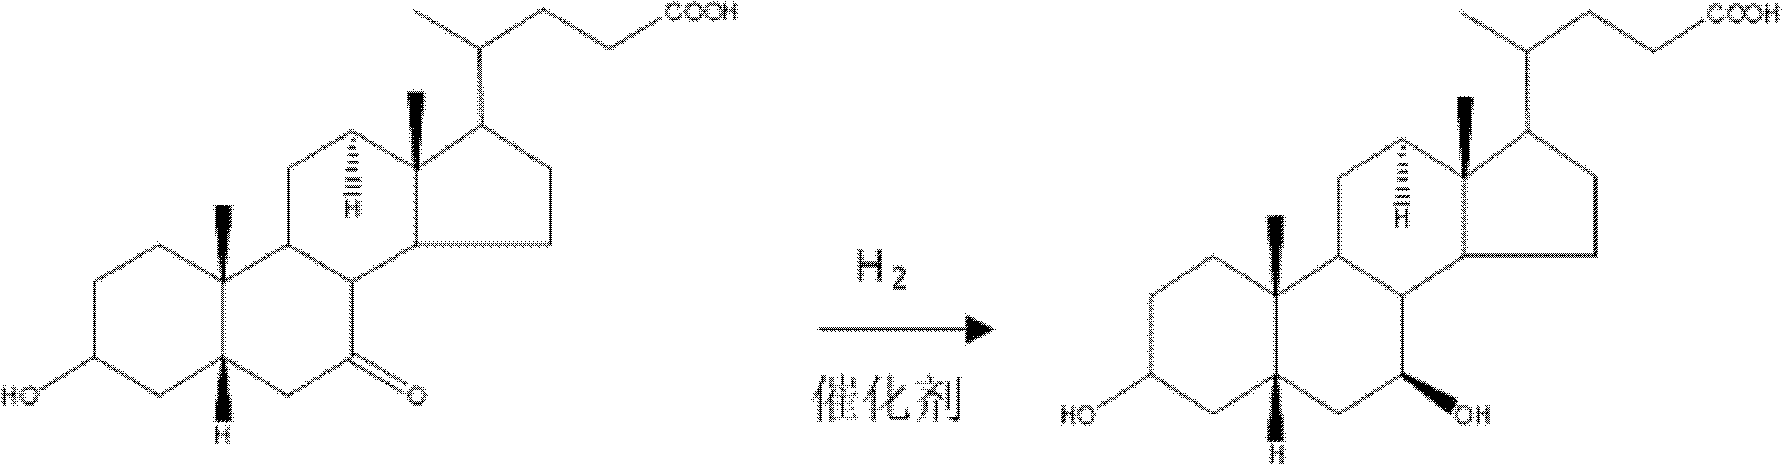 Method for preparing ursodesoxycholic acid by chiral catalytic hydrogenation of 7-ketodesoxycholic acid